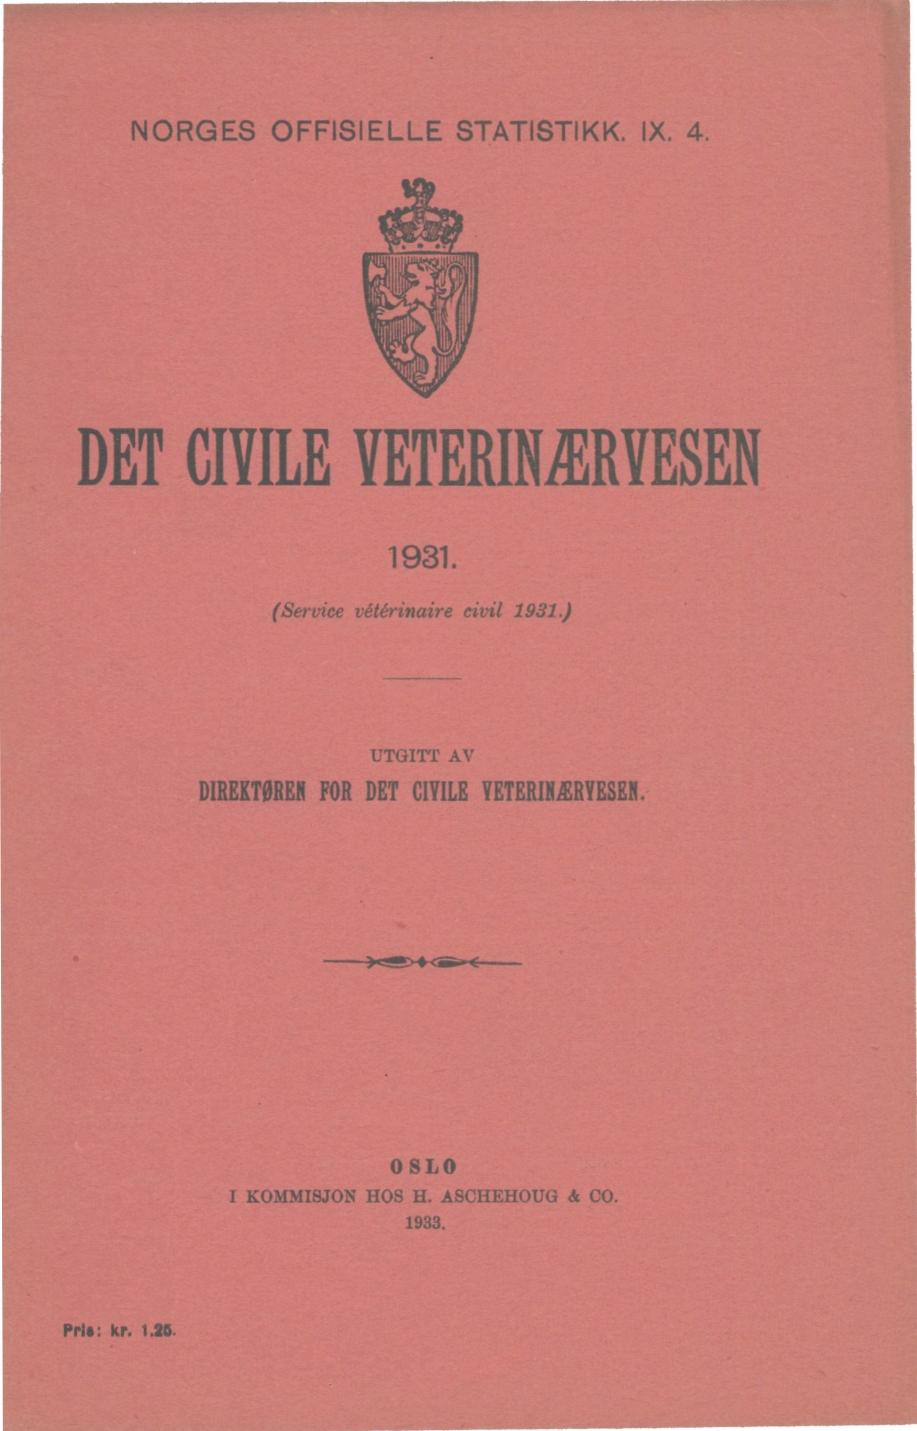 DET CIVILE VETERINÆR VESEN (Service vétérinaire civil 9.